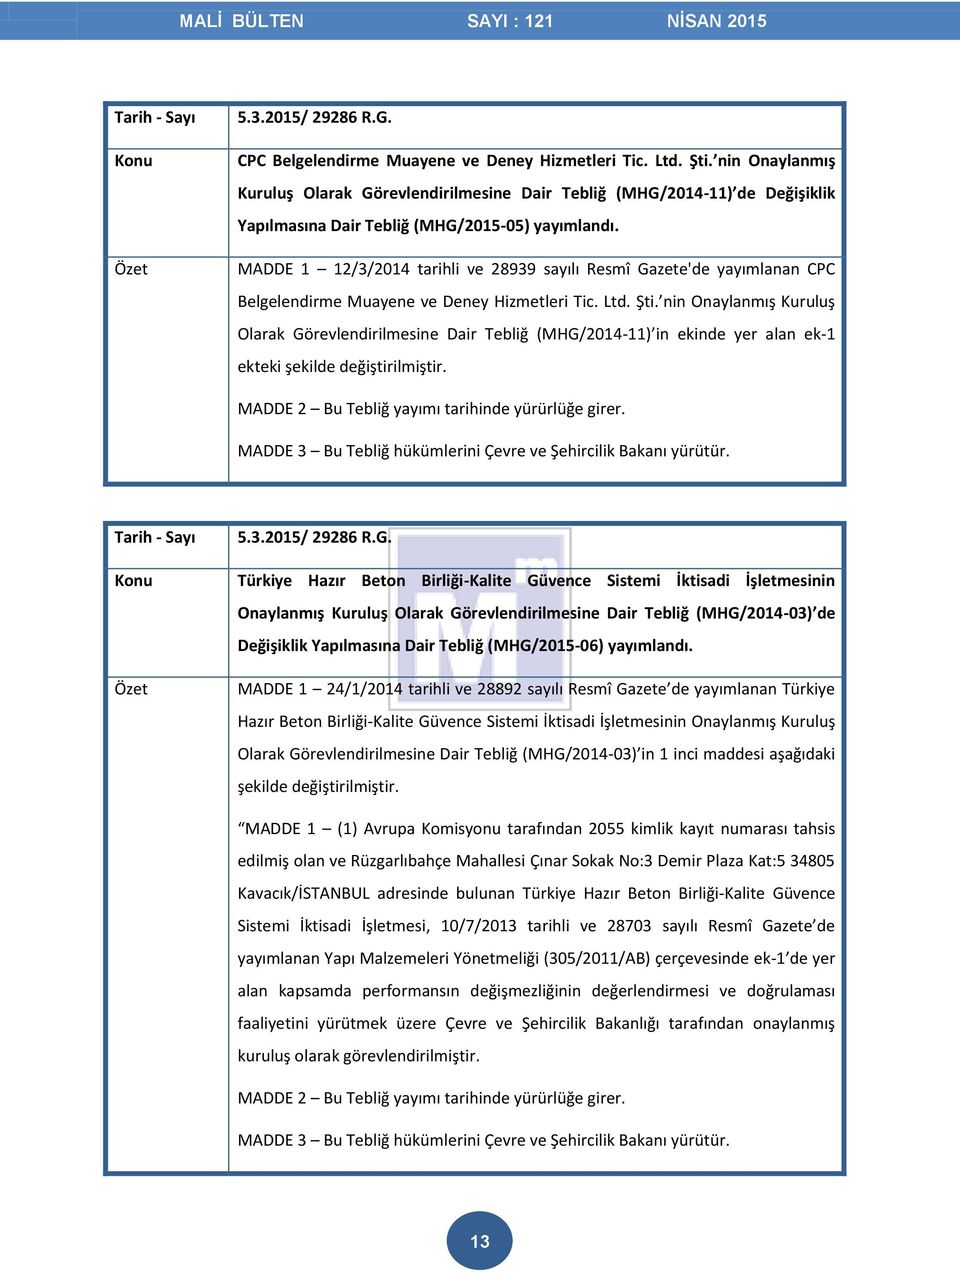 MADDE 1 12/3/2014 tarihli ve 28939 sayılı Resmî Gazete'de yayımlanan CPC Belgelendirme Muayene ve Deney Hizmetleri Tic. Ltd. Şti.